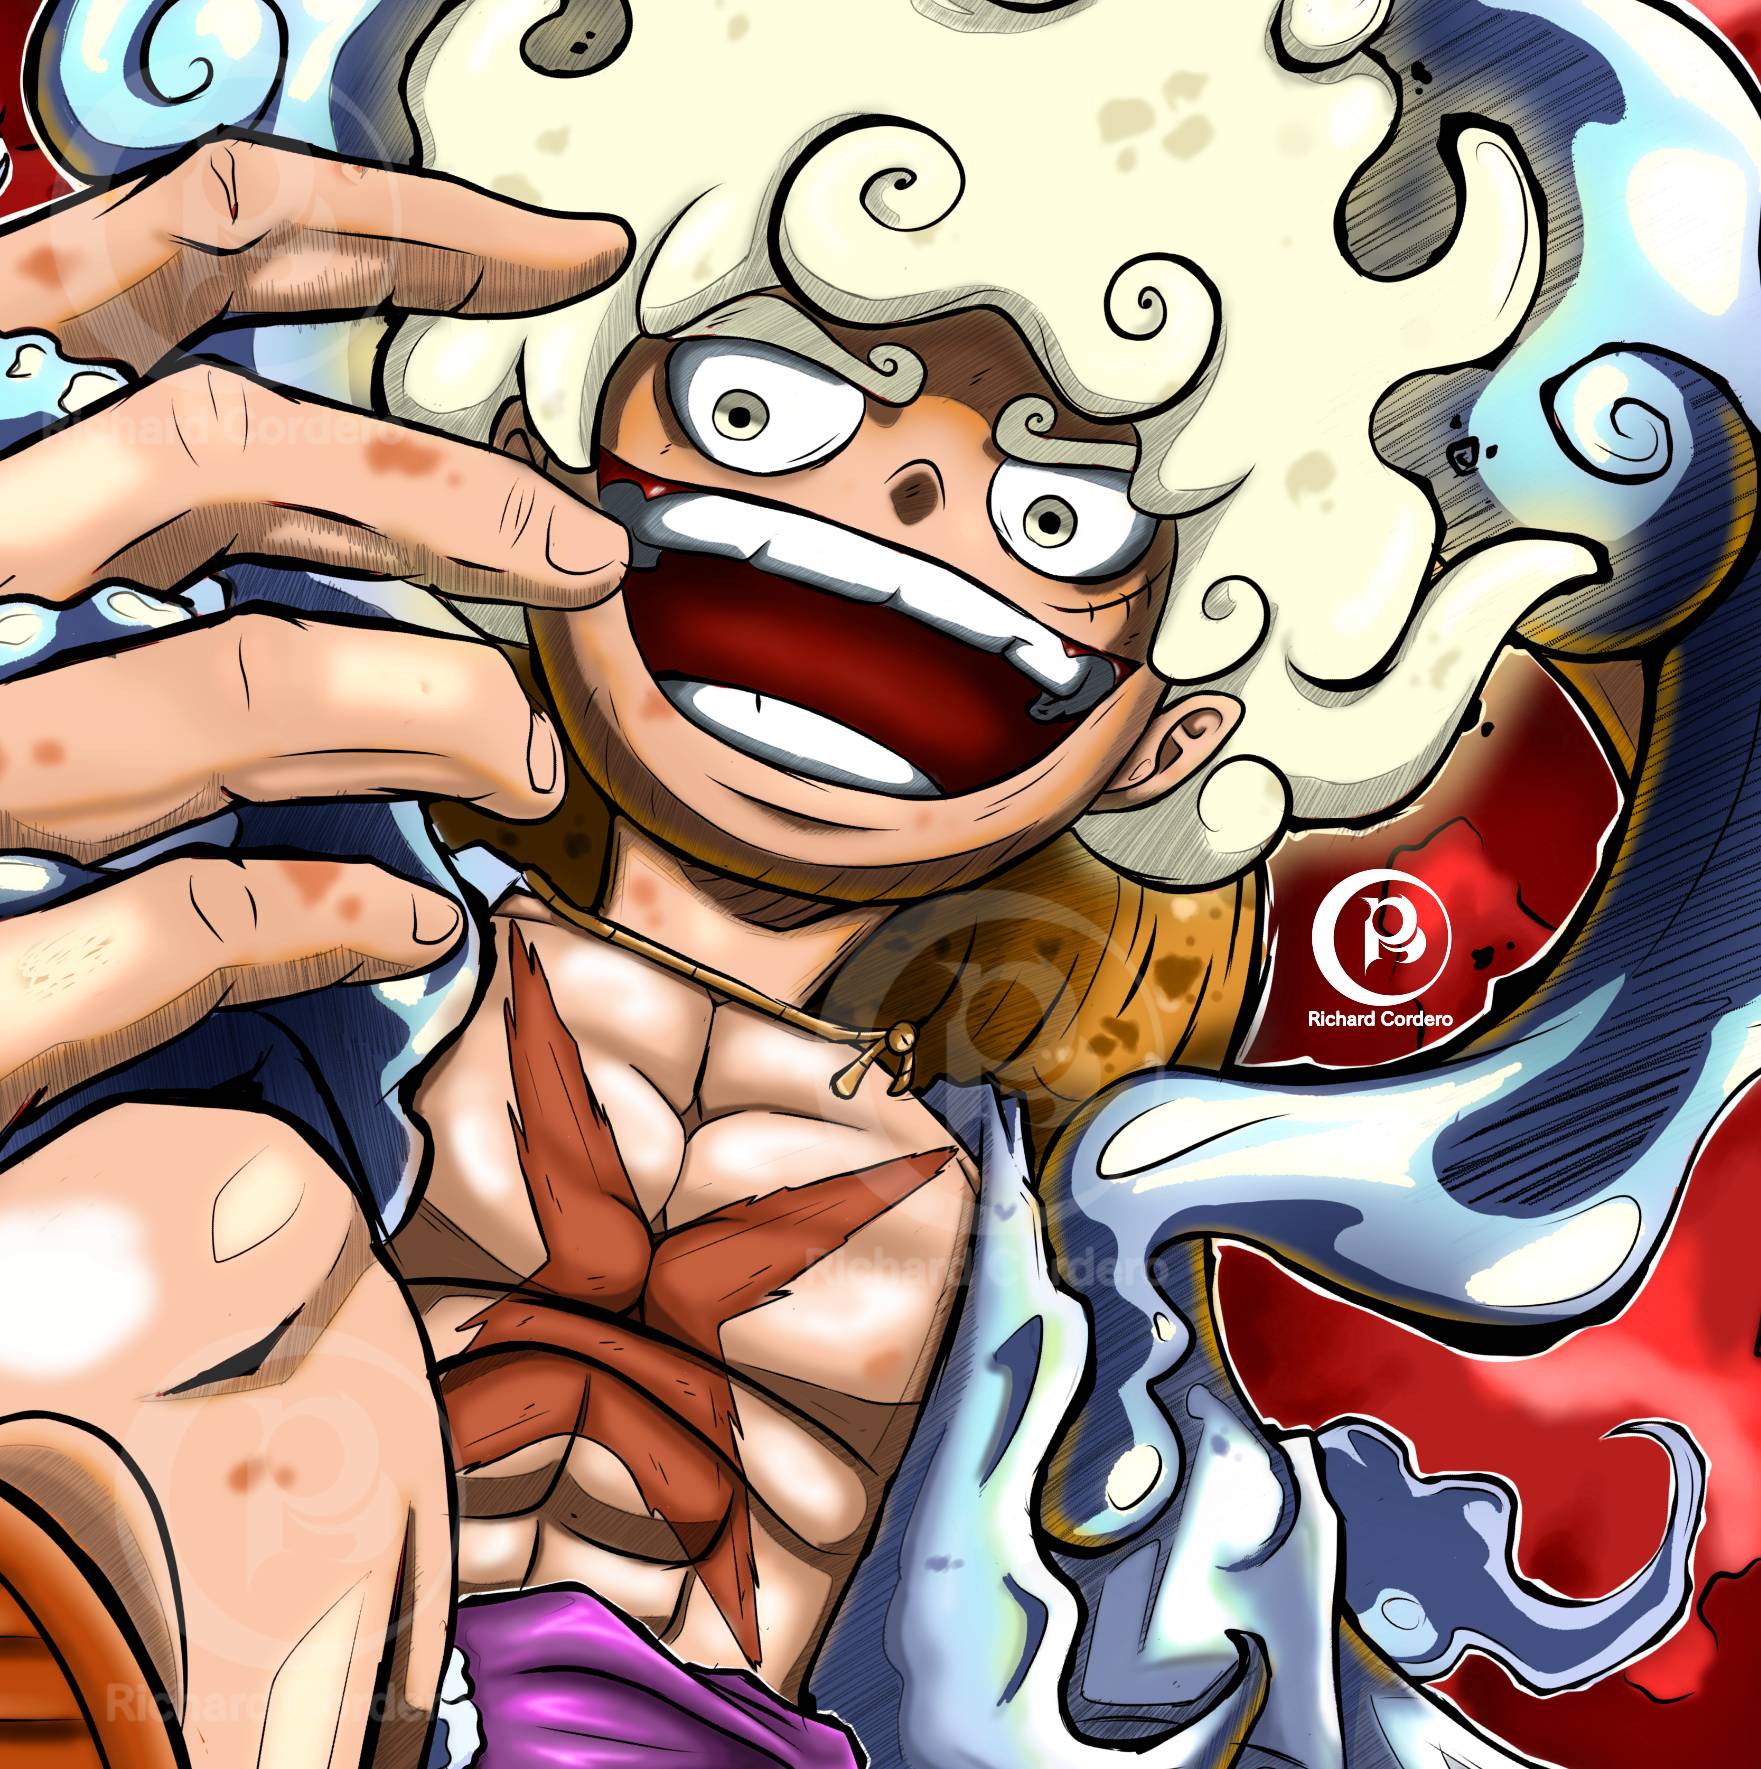 Monkey D Luffy - Gear 5 - One Piece by caiquenadal on DeviantArt